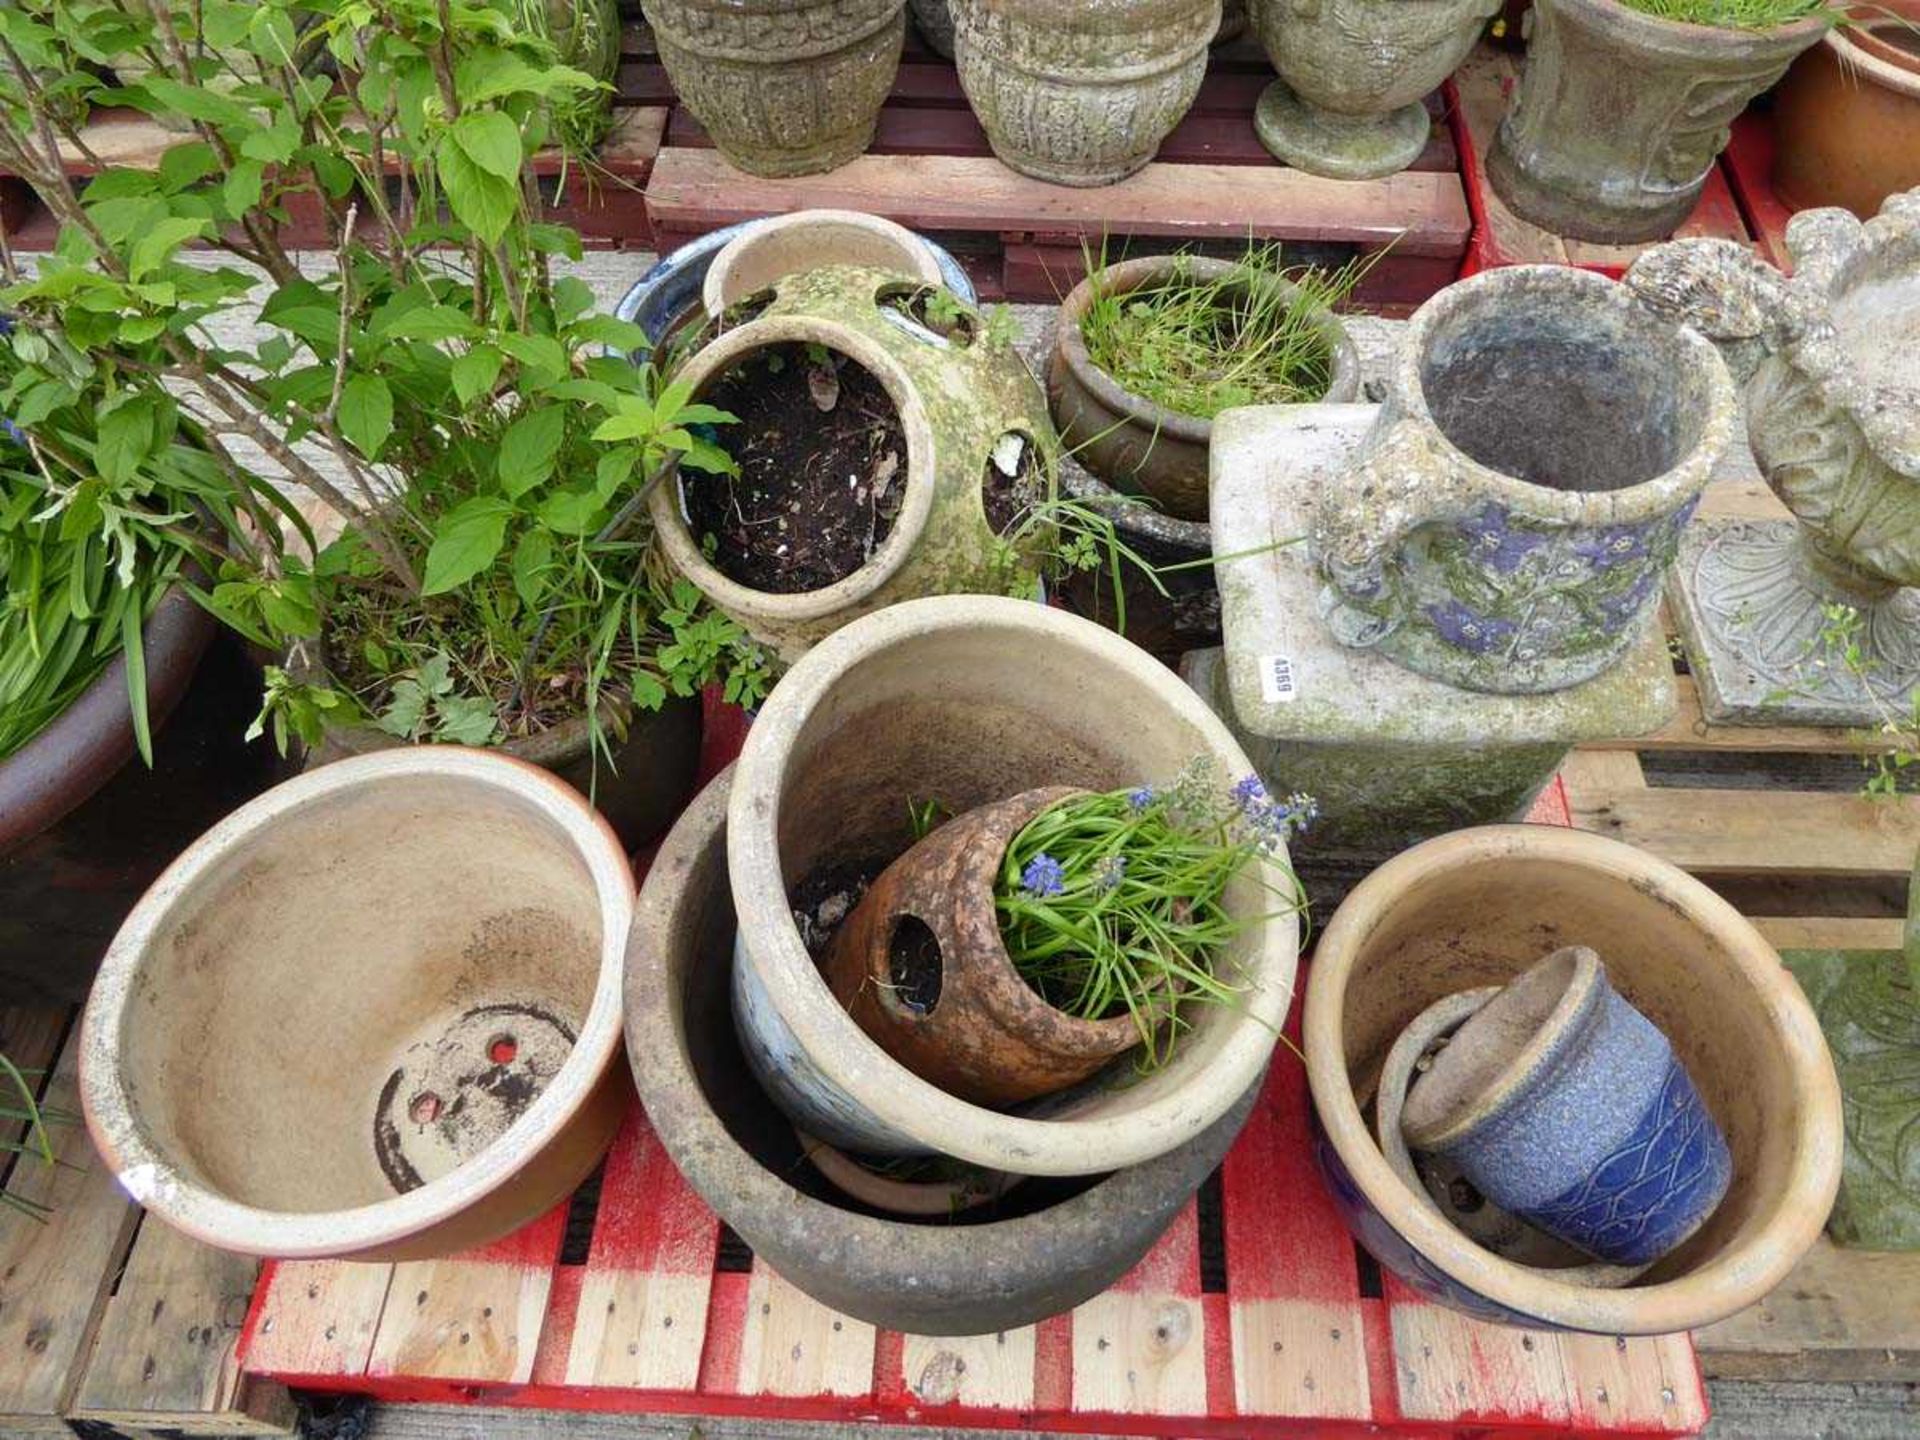 Pallet of assorted pots inc. strawberry planters, concrete plinth etc.